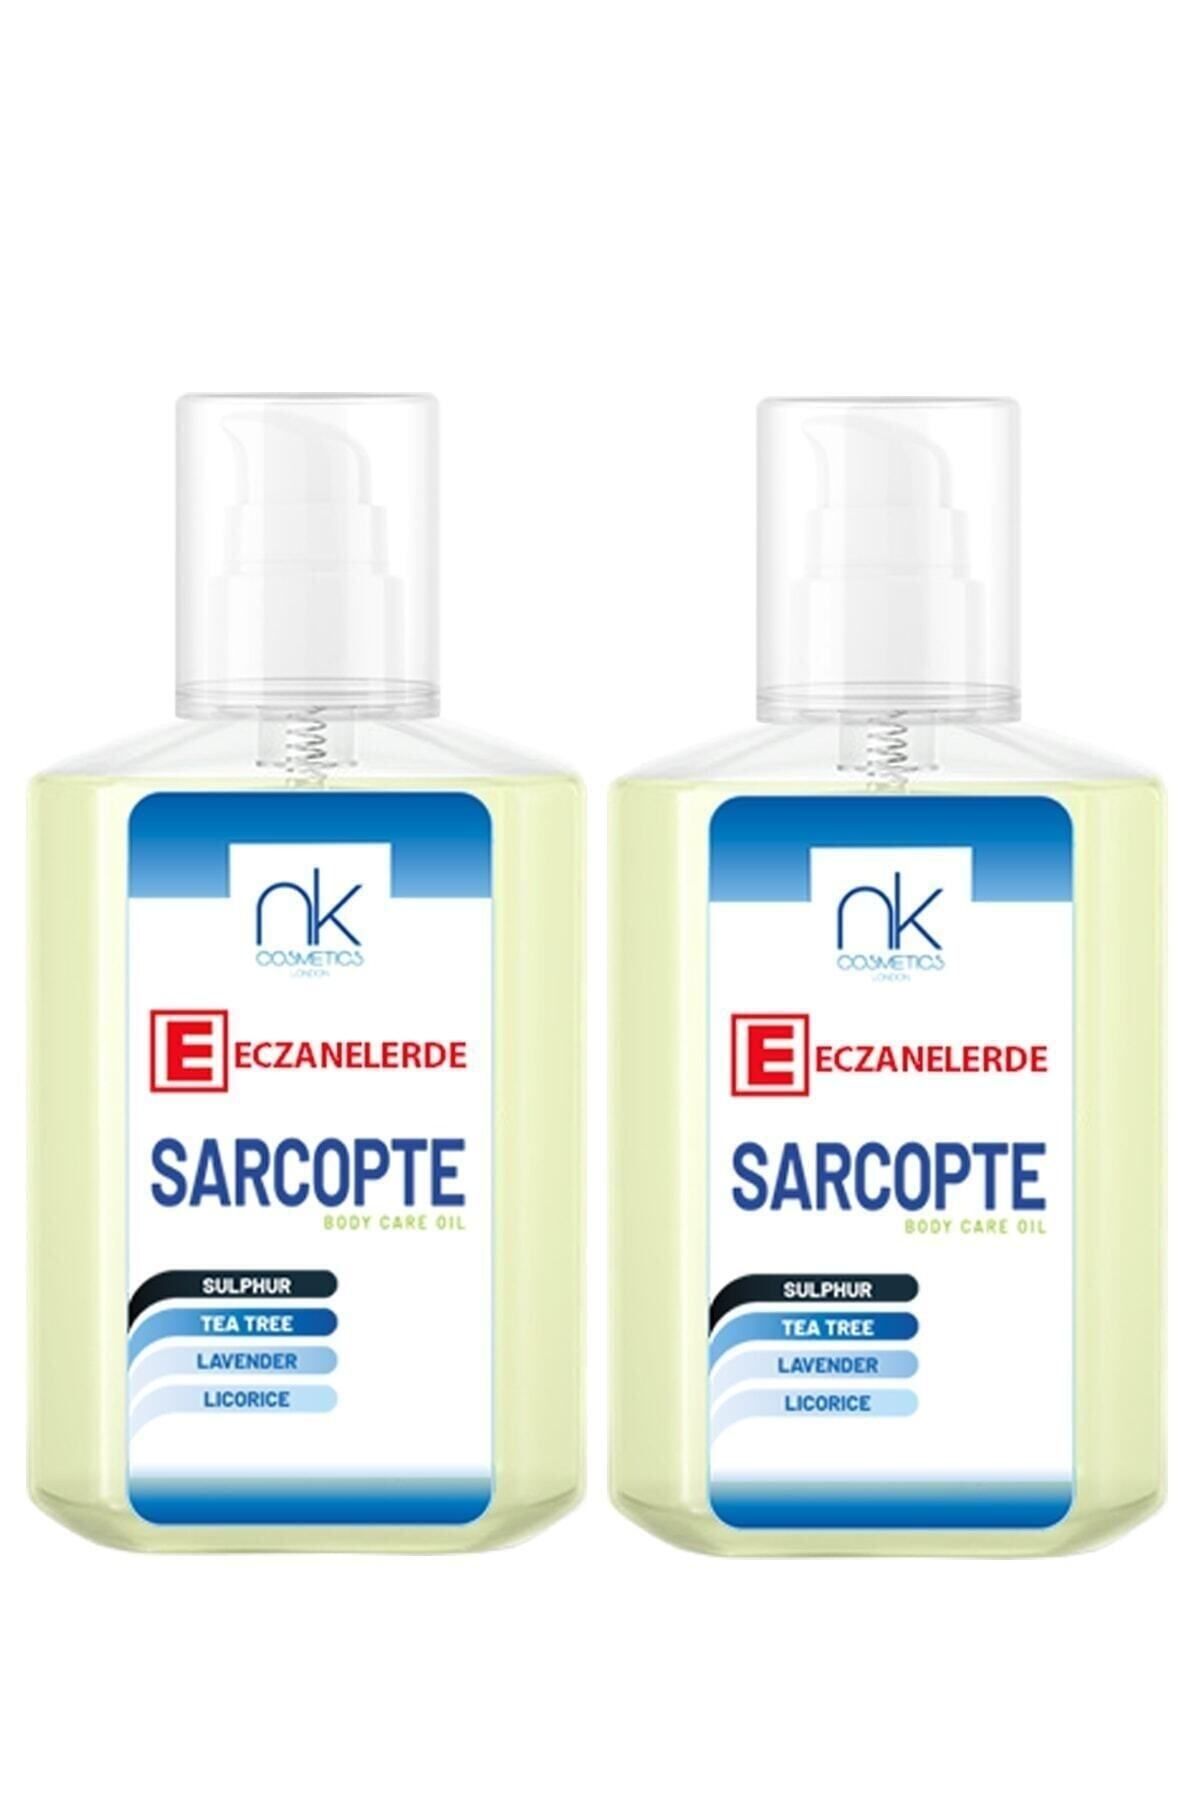 NK Cosmetics Sarcopte Aile Boyu Koruyucu Cilt Bakım Losyonu Güçlü Formül 250 ml *2 Li Avantaj Seti.